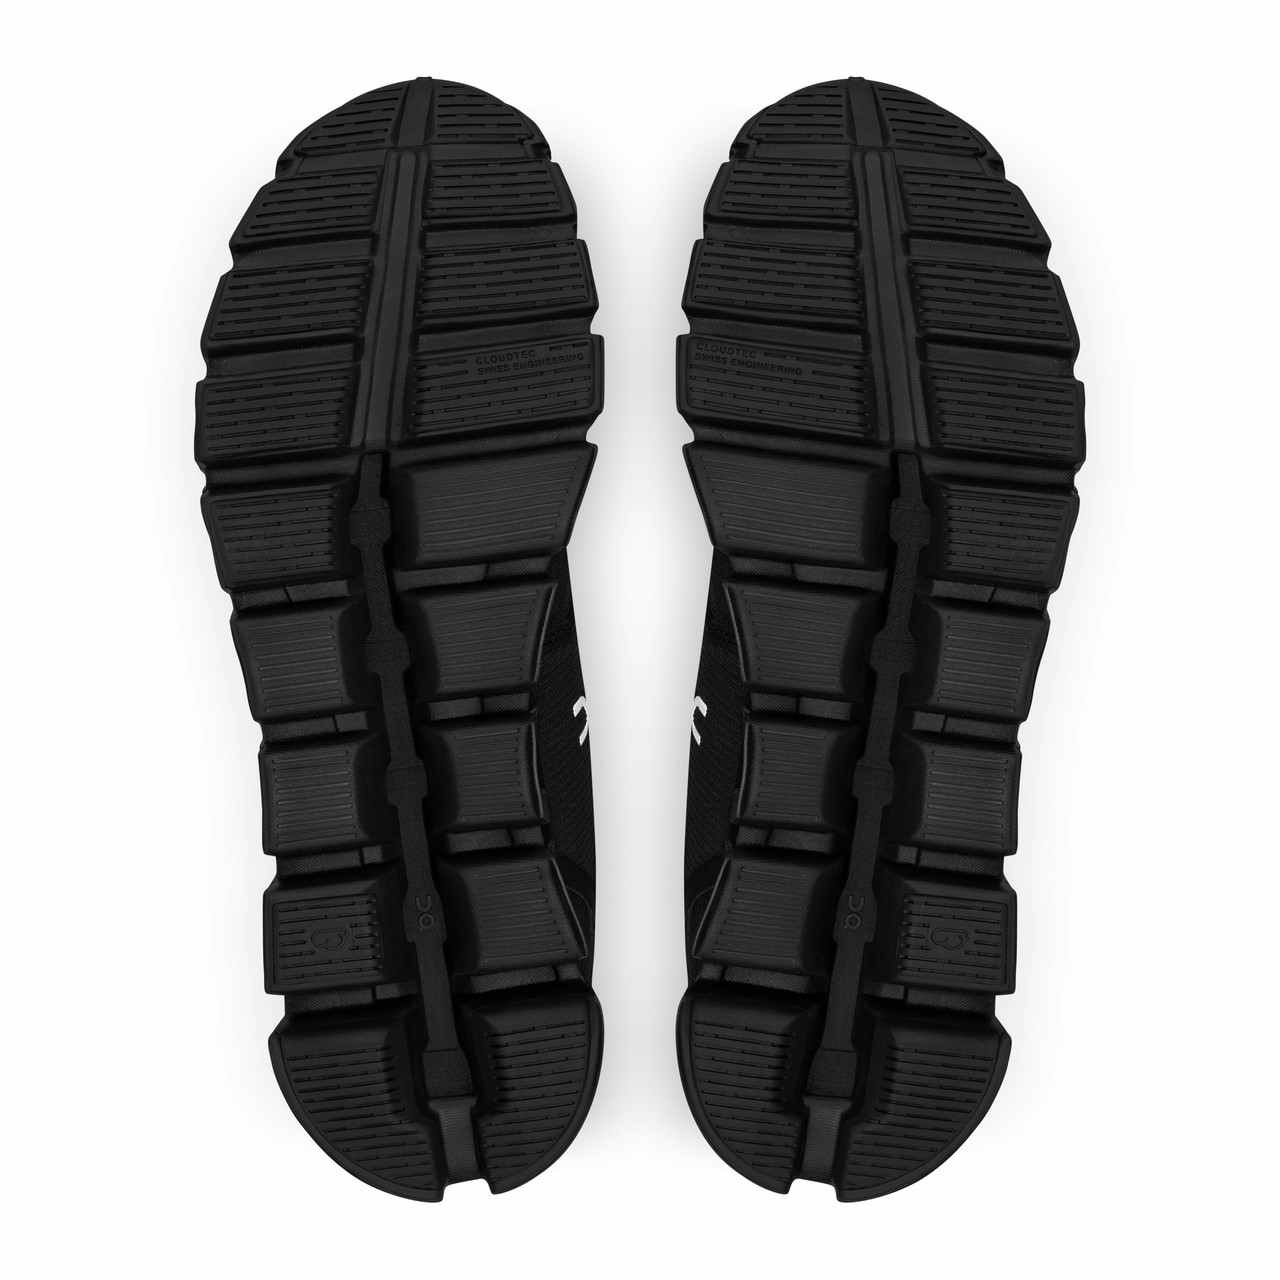 Cloud 5 Waterproof Shoes Black